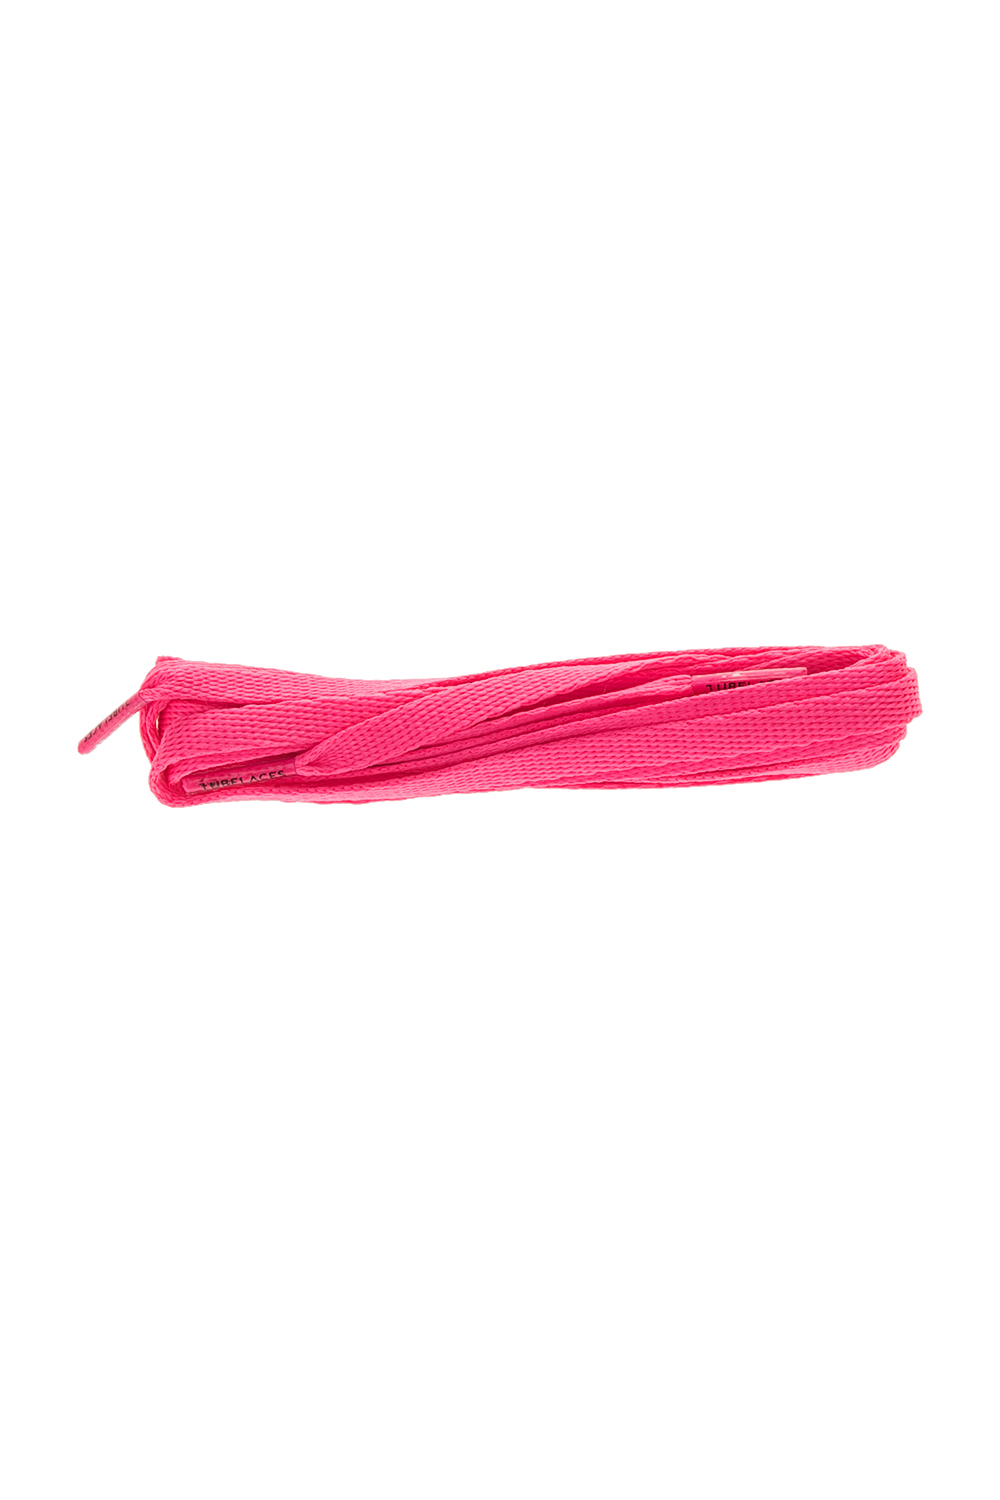 TUBELACES - Unisex κορδόνια TUBELACES WHITE FLAT ροζ Γυναικεία/Αξεσουάρ/Λοιπά